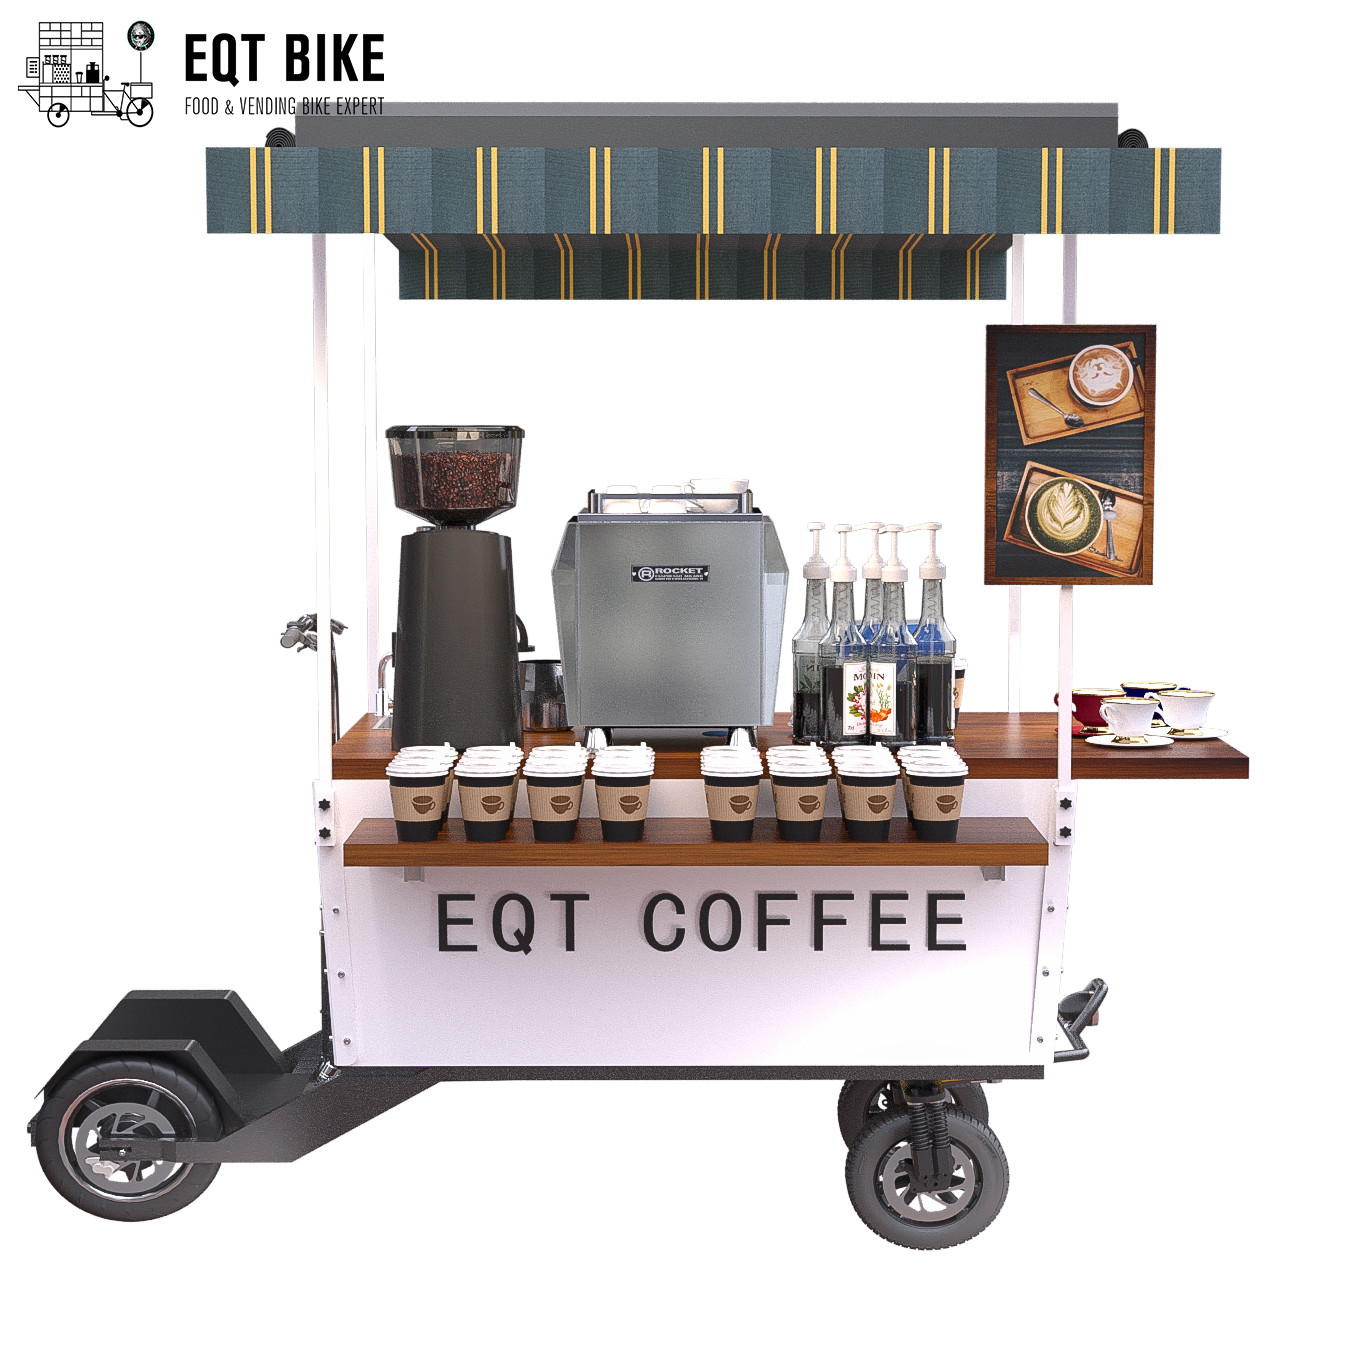 18KM / H Vending Scooter Box هيكل عربة قهوة الدراجة